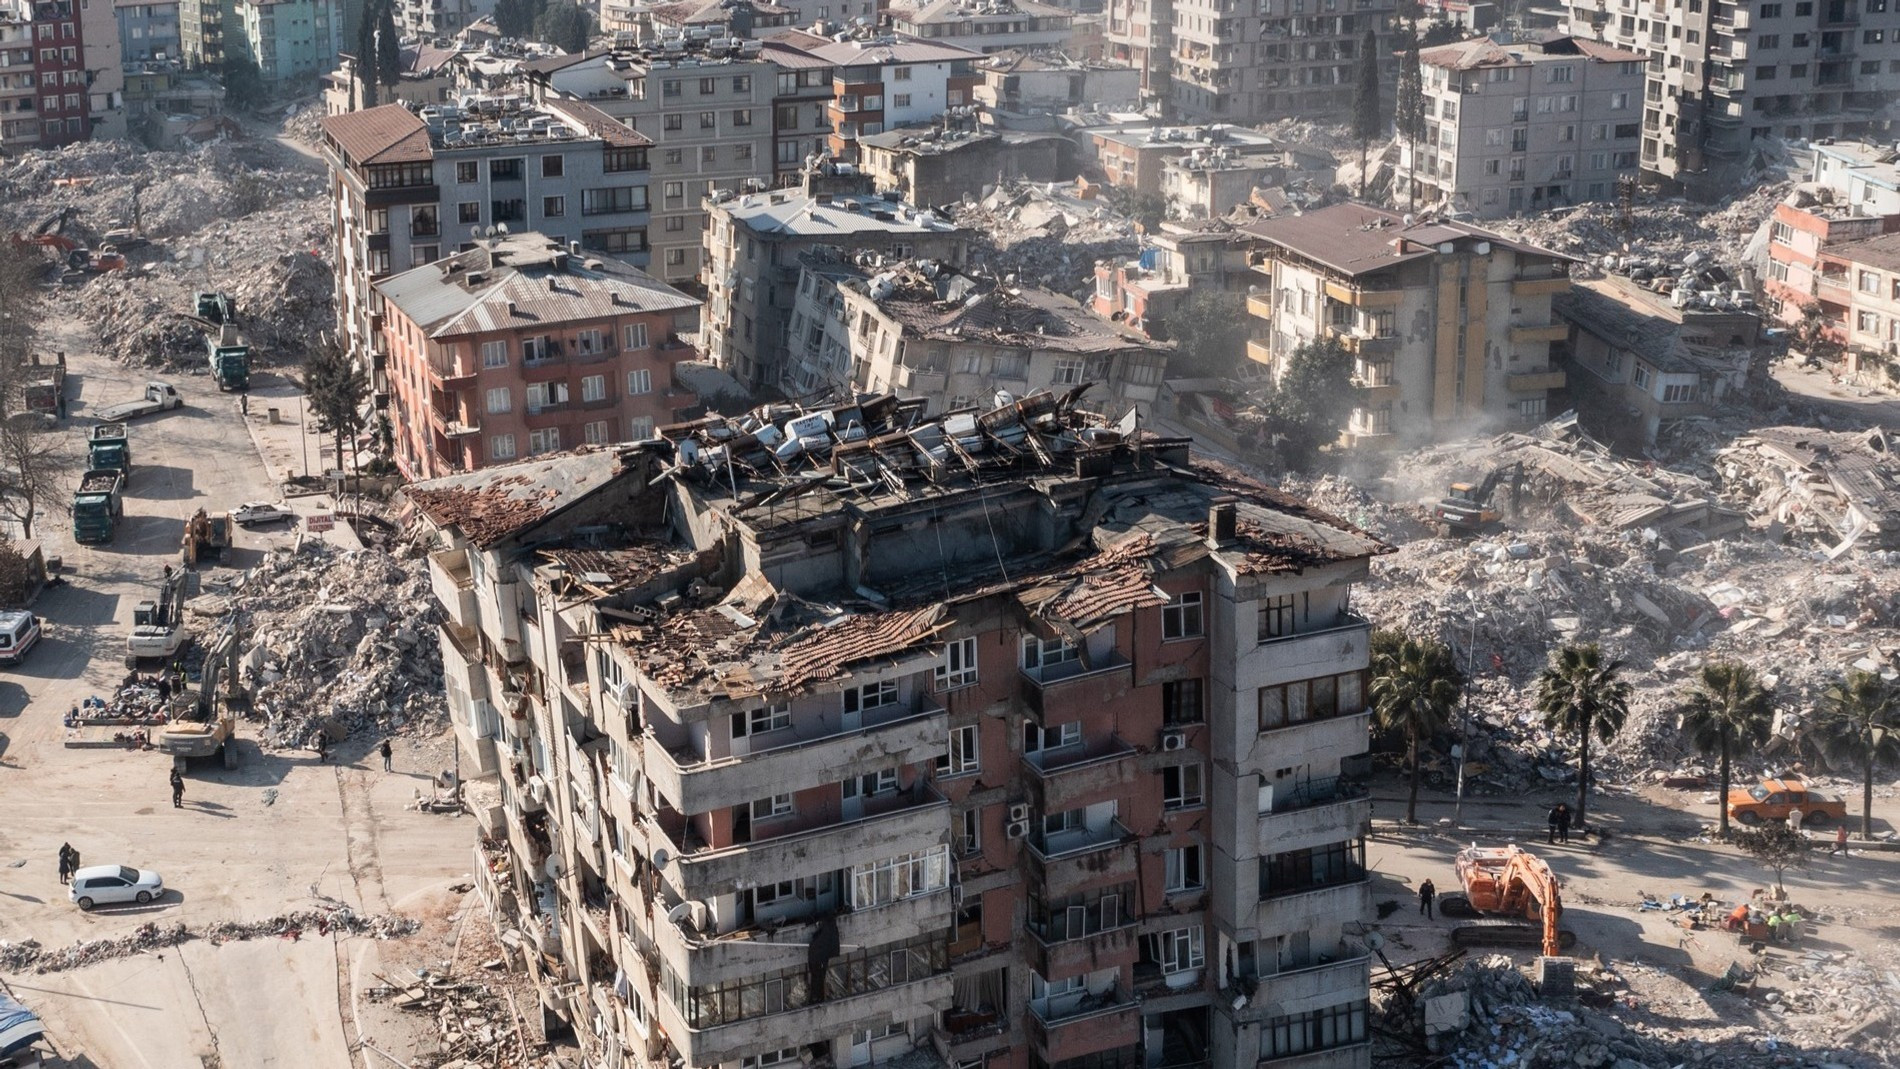 Разрушенные здания в результате мощнейшего замлетрясения в турецкой провинции Хатай
Фото: Getty Images